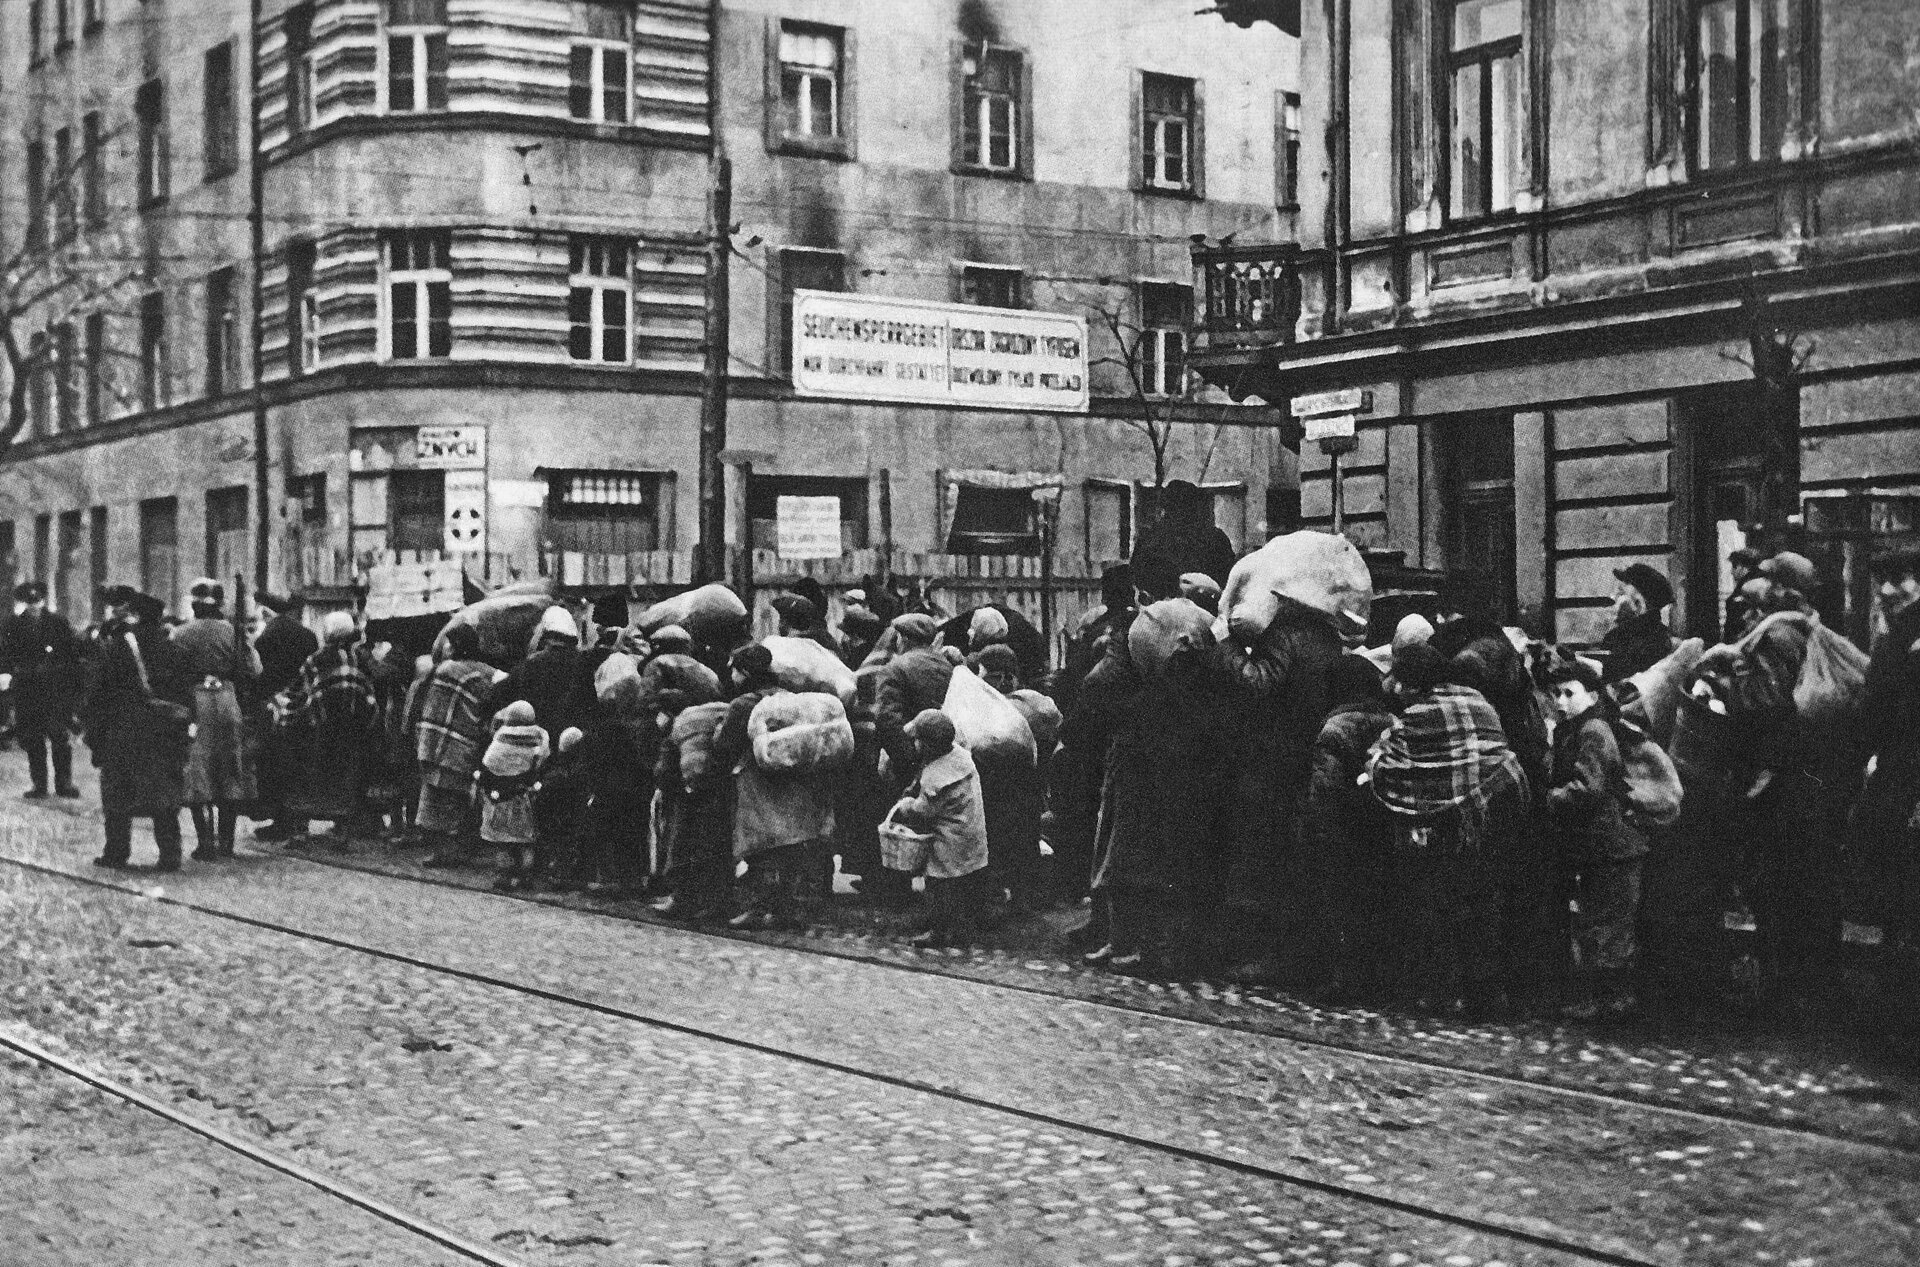 Czarno‑biała fotografia przedstawia ulicę centrum miasta, na której w rzędzie stoją ludzie trzymający liczne tobołki i pakunki. Na ulicy znajdują się tory tramwajowe. 